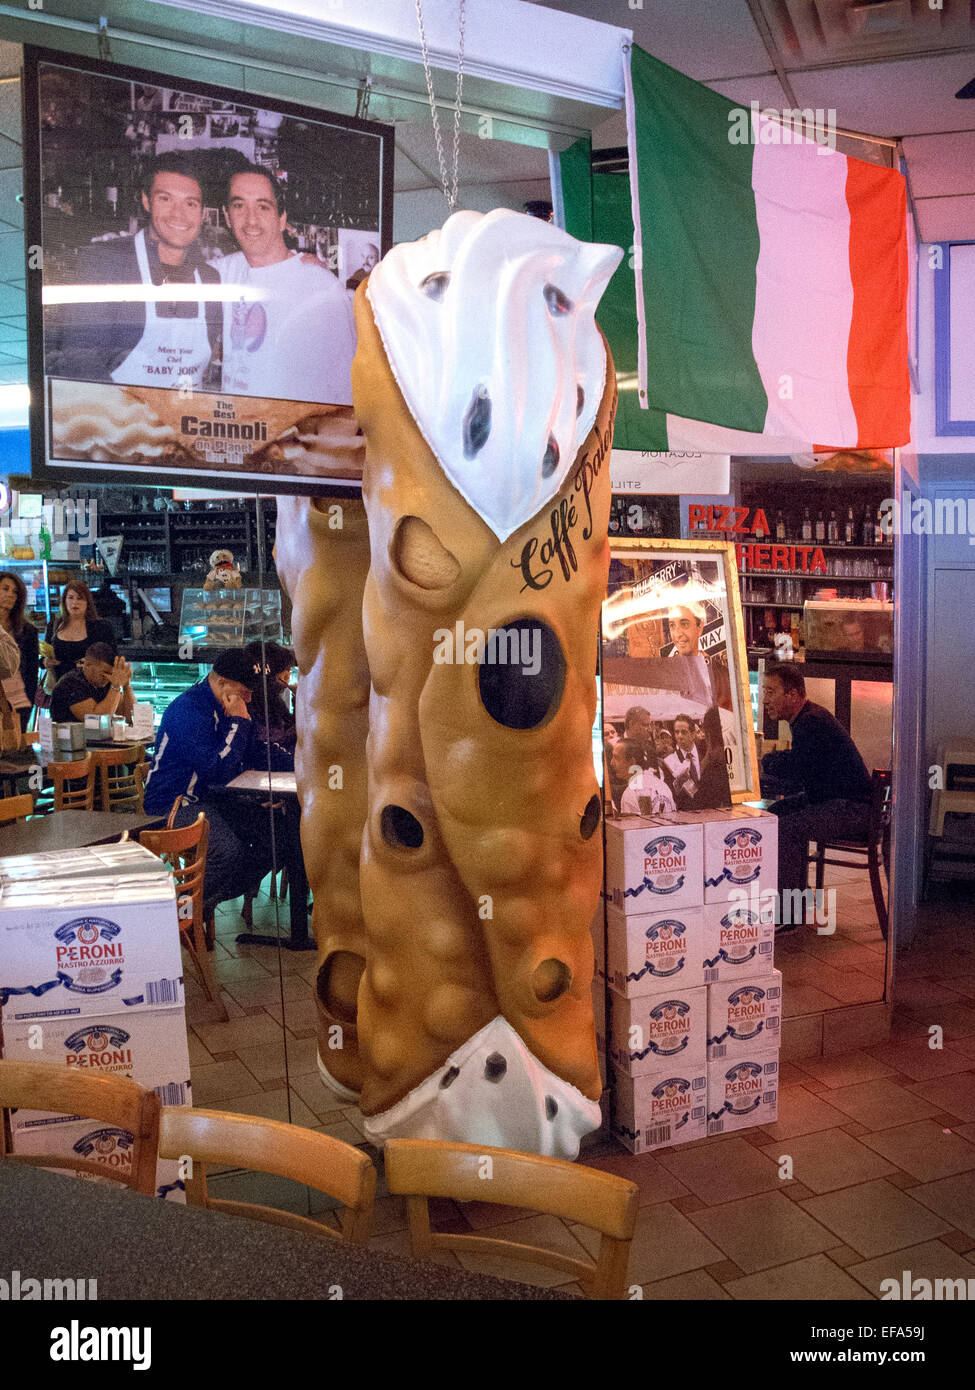 Ein riesiges Modell eines Canoli schmückt ein Restaurant im New Yorker Stadtteil Little Italy in Manhattan. Cannoli sind italienische Gebäck Desserts bestehend aus röhrenförmigen Muscheln von frittierten Teig, gefüllt mit einer süßen, cremigen Füllung in der Regel mit Ricotta-Käse. Beachten Sie die italienische Flagge. Stockfoto